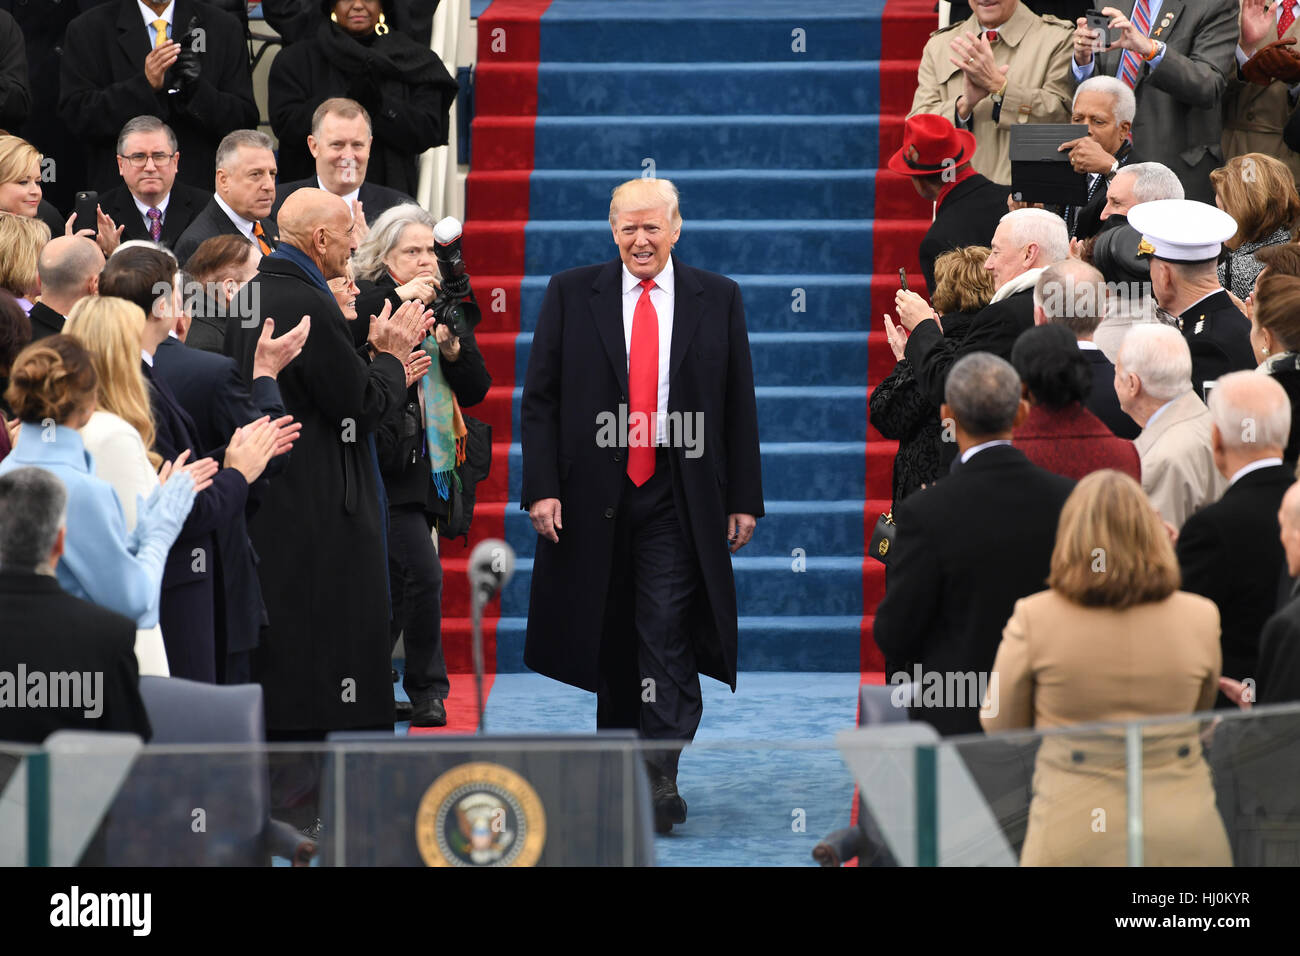 Präsident elect Trump kommt aus seiner Amtseinführung am 20. Januar 2017 in Washington, DC Trumpf der 45. Präsident der Vereinigten Staaten wird. Foto von Pat Benic/UPI - kein Draht-SERVICE - Foto: Pat Benic/Consolidated/Dpa Stockfoto